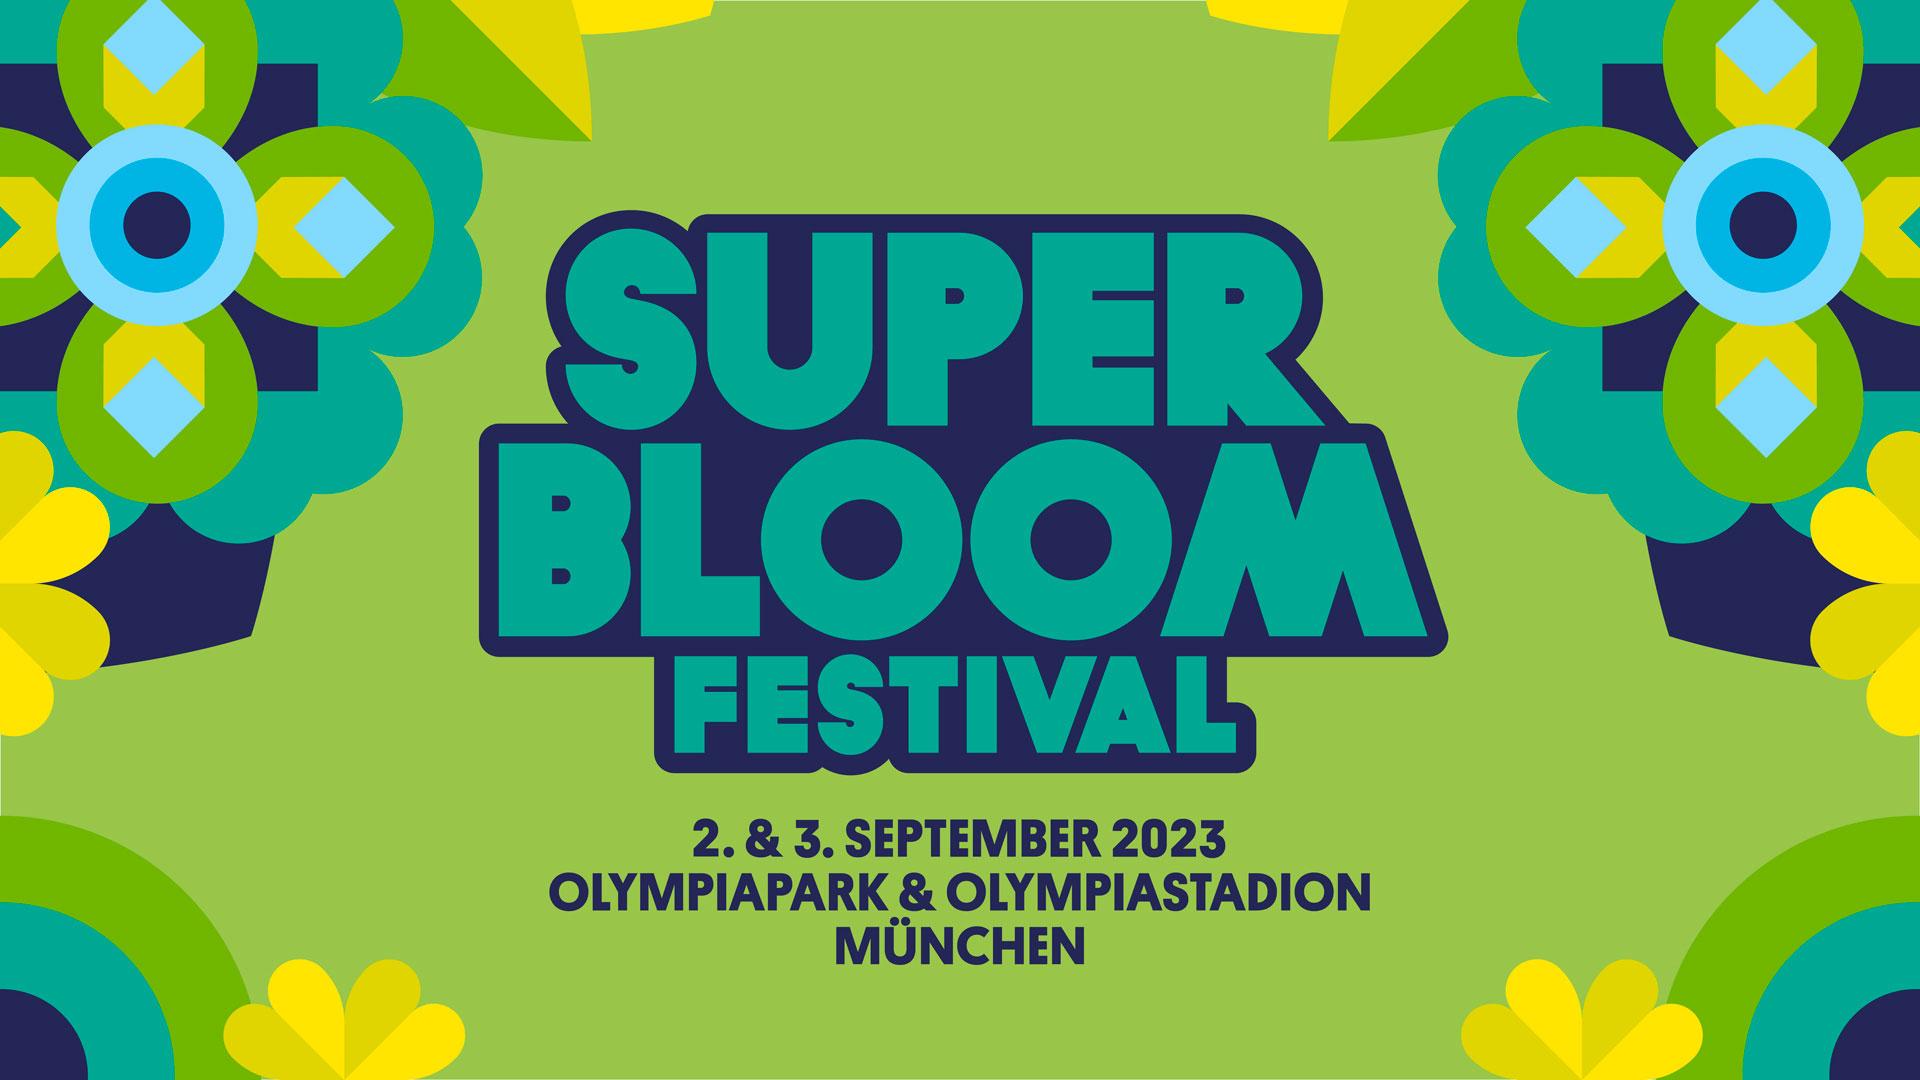 Das MegaFestival mit BAYERN 3 SUPERBLOOM 2023 in München u.a. mit